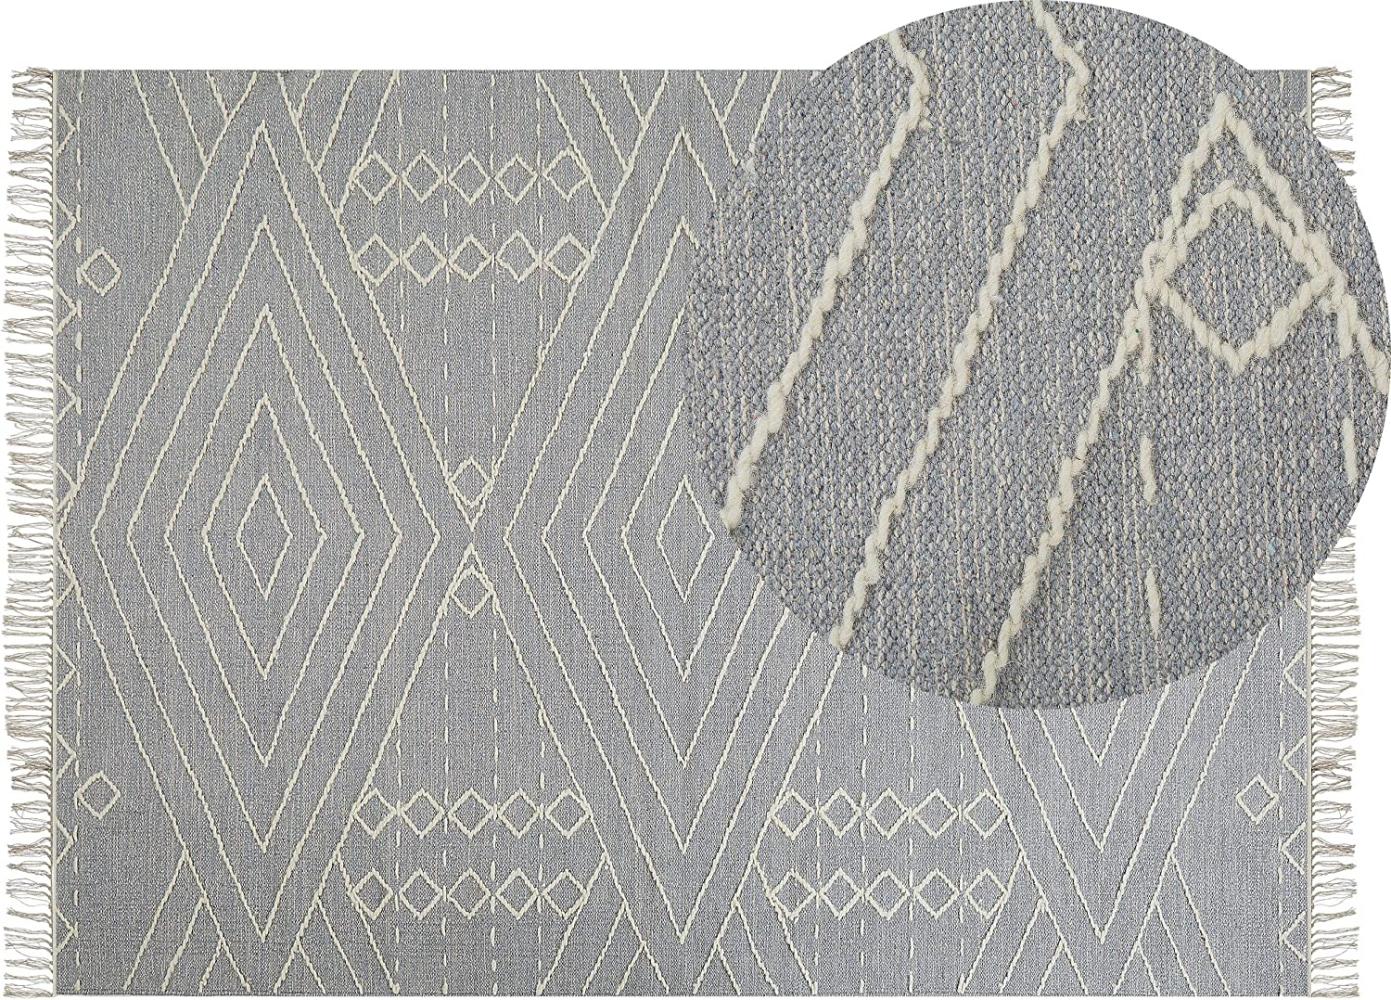 Teppich Baumwolle grau weiß 140 x 200 cm geometrisches Muster Kurzflor KHENIFRA Bild 1